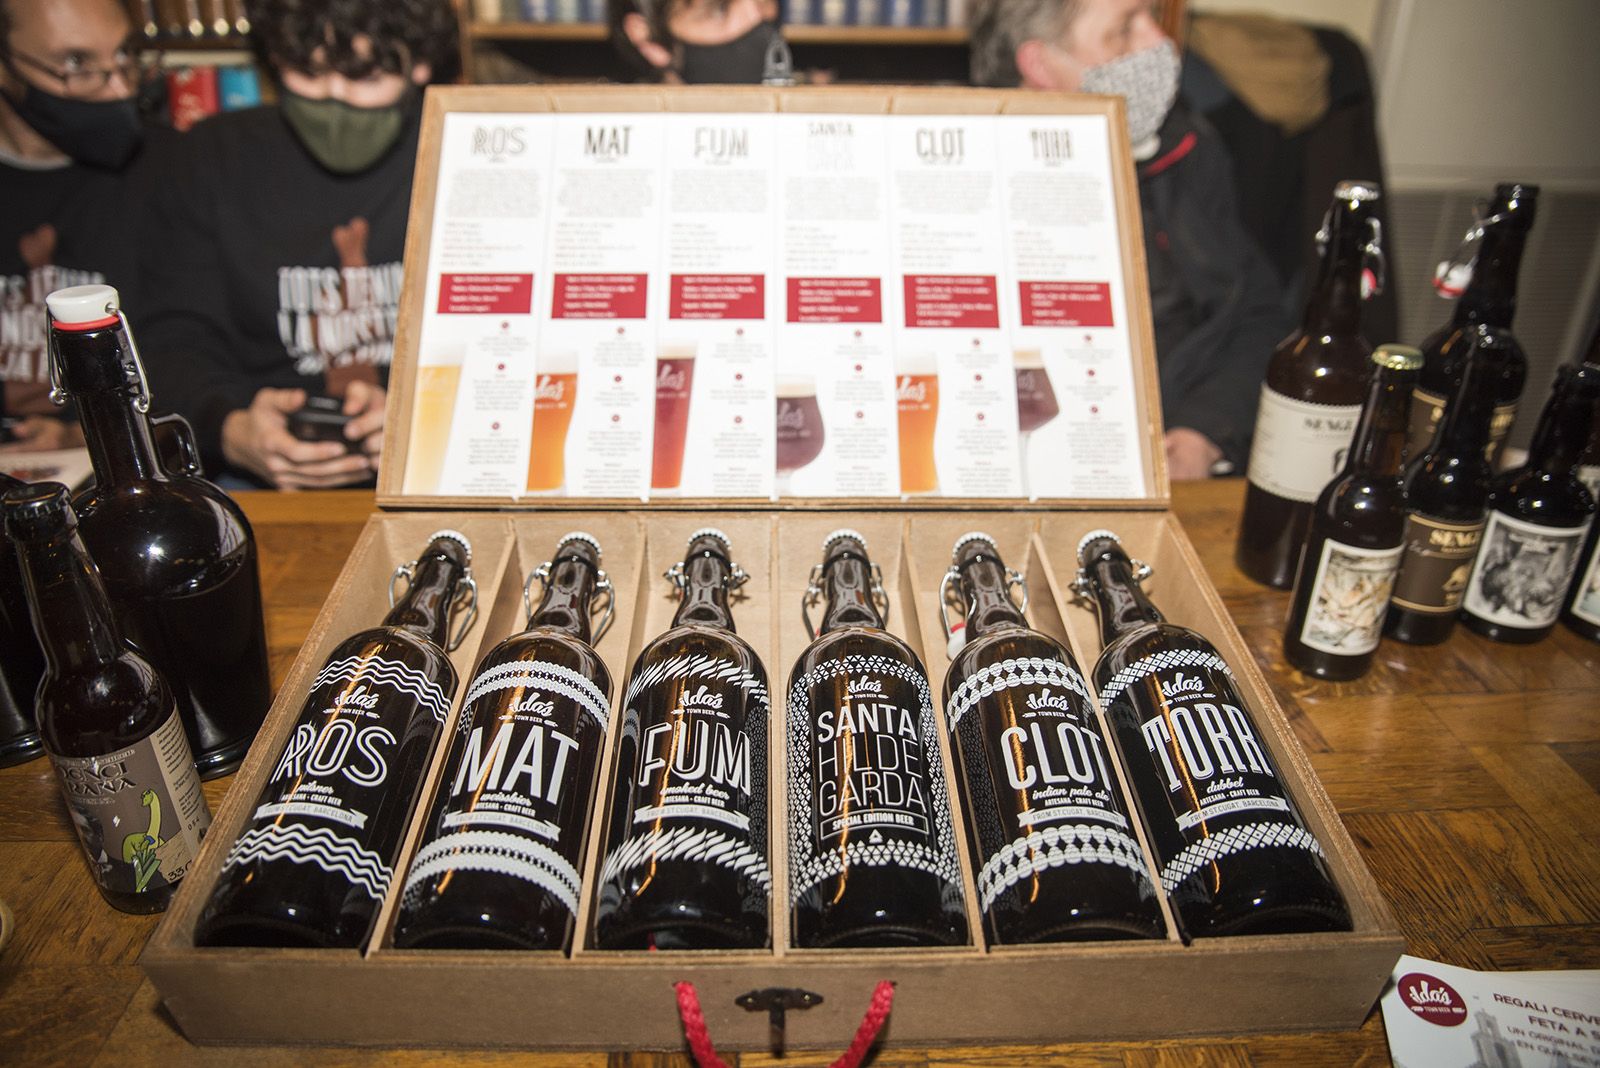 Cerveses artesanals Ilda's a la presentació de la dotzena revista del Món Sant Cugat. Foto: Bernat Millet.